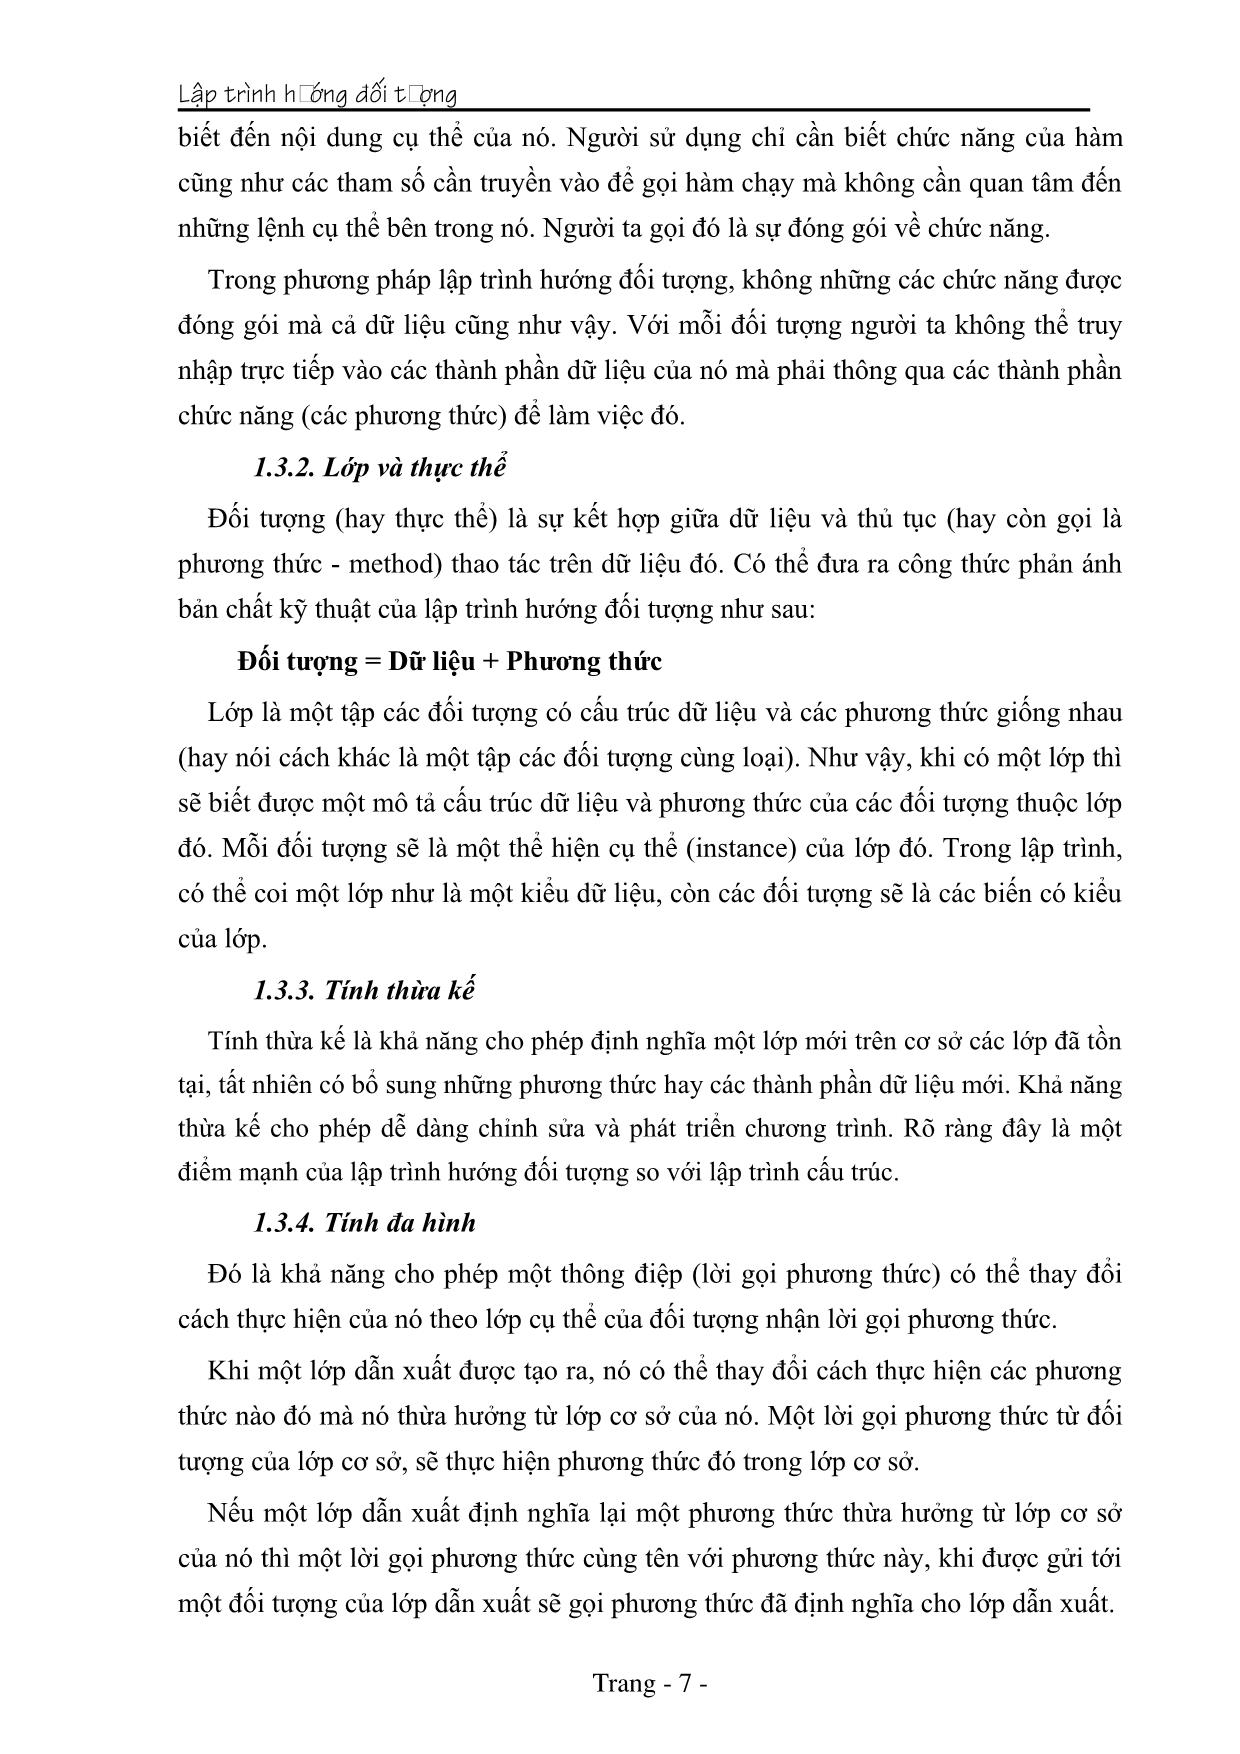 Giáo trình Lập trình hướng đối tượng (Phần 1) trang 7